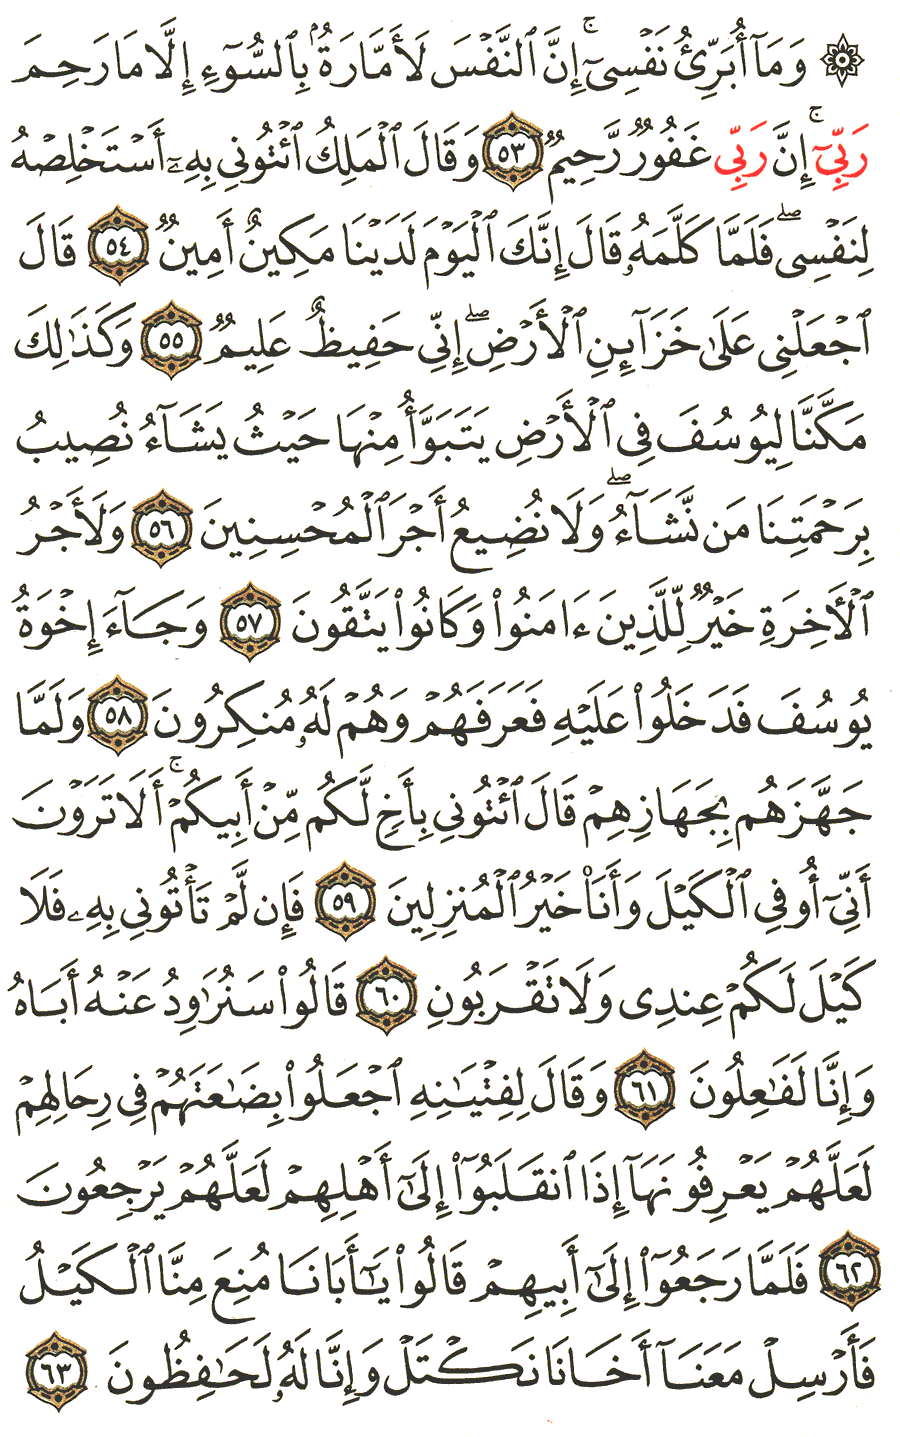 الصفحة 242 من القرآن الكريم